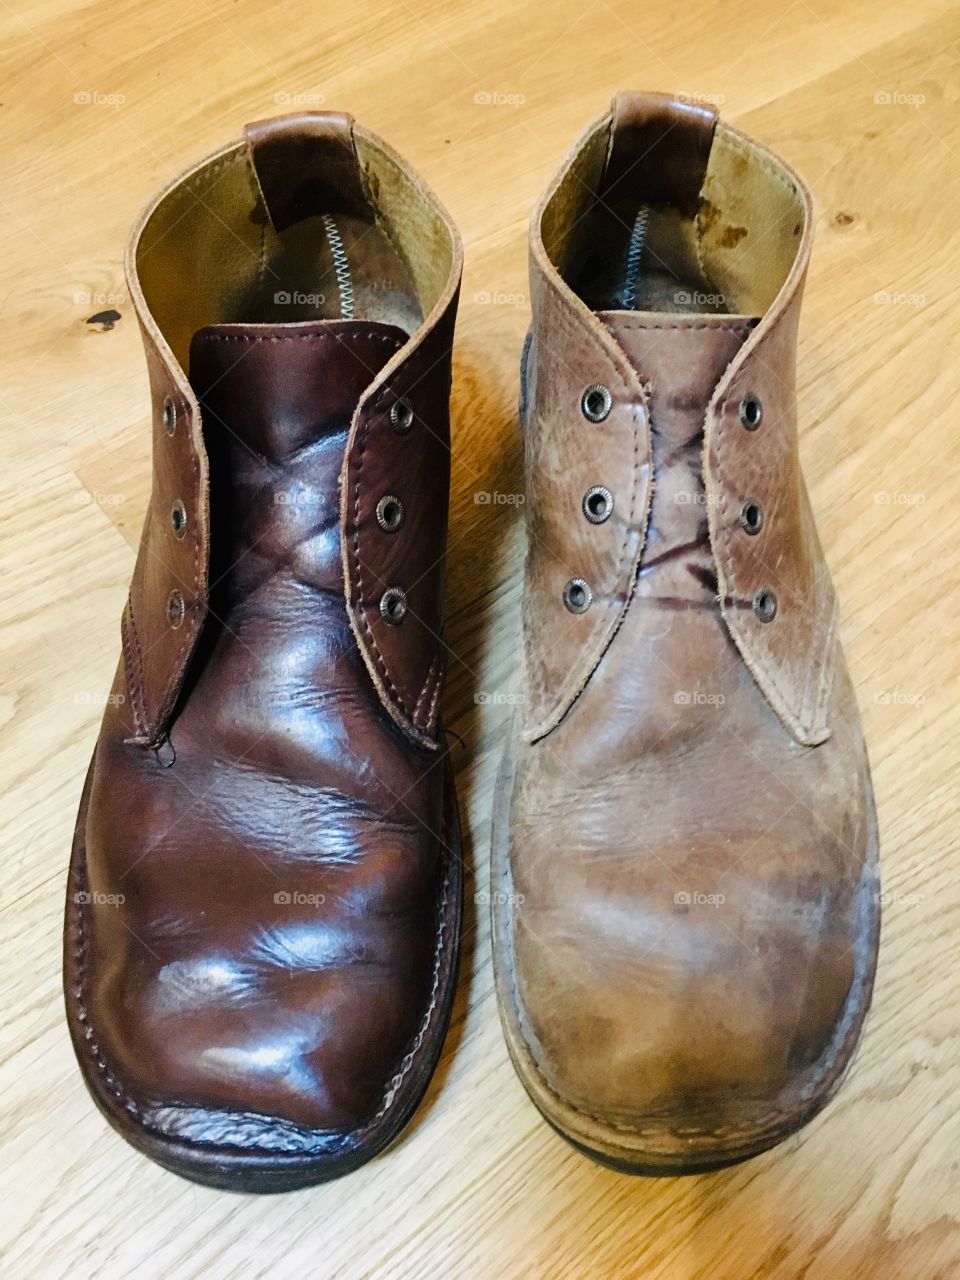 Leather shoe polish